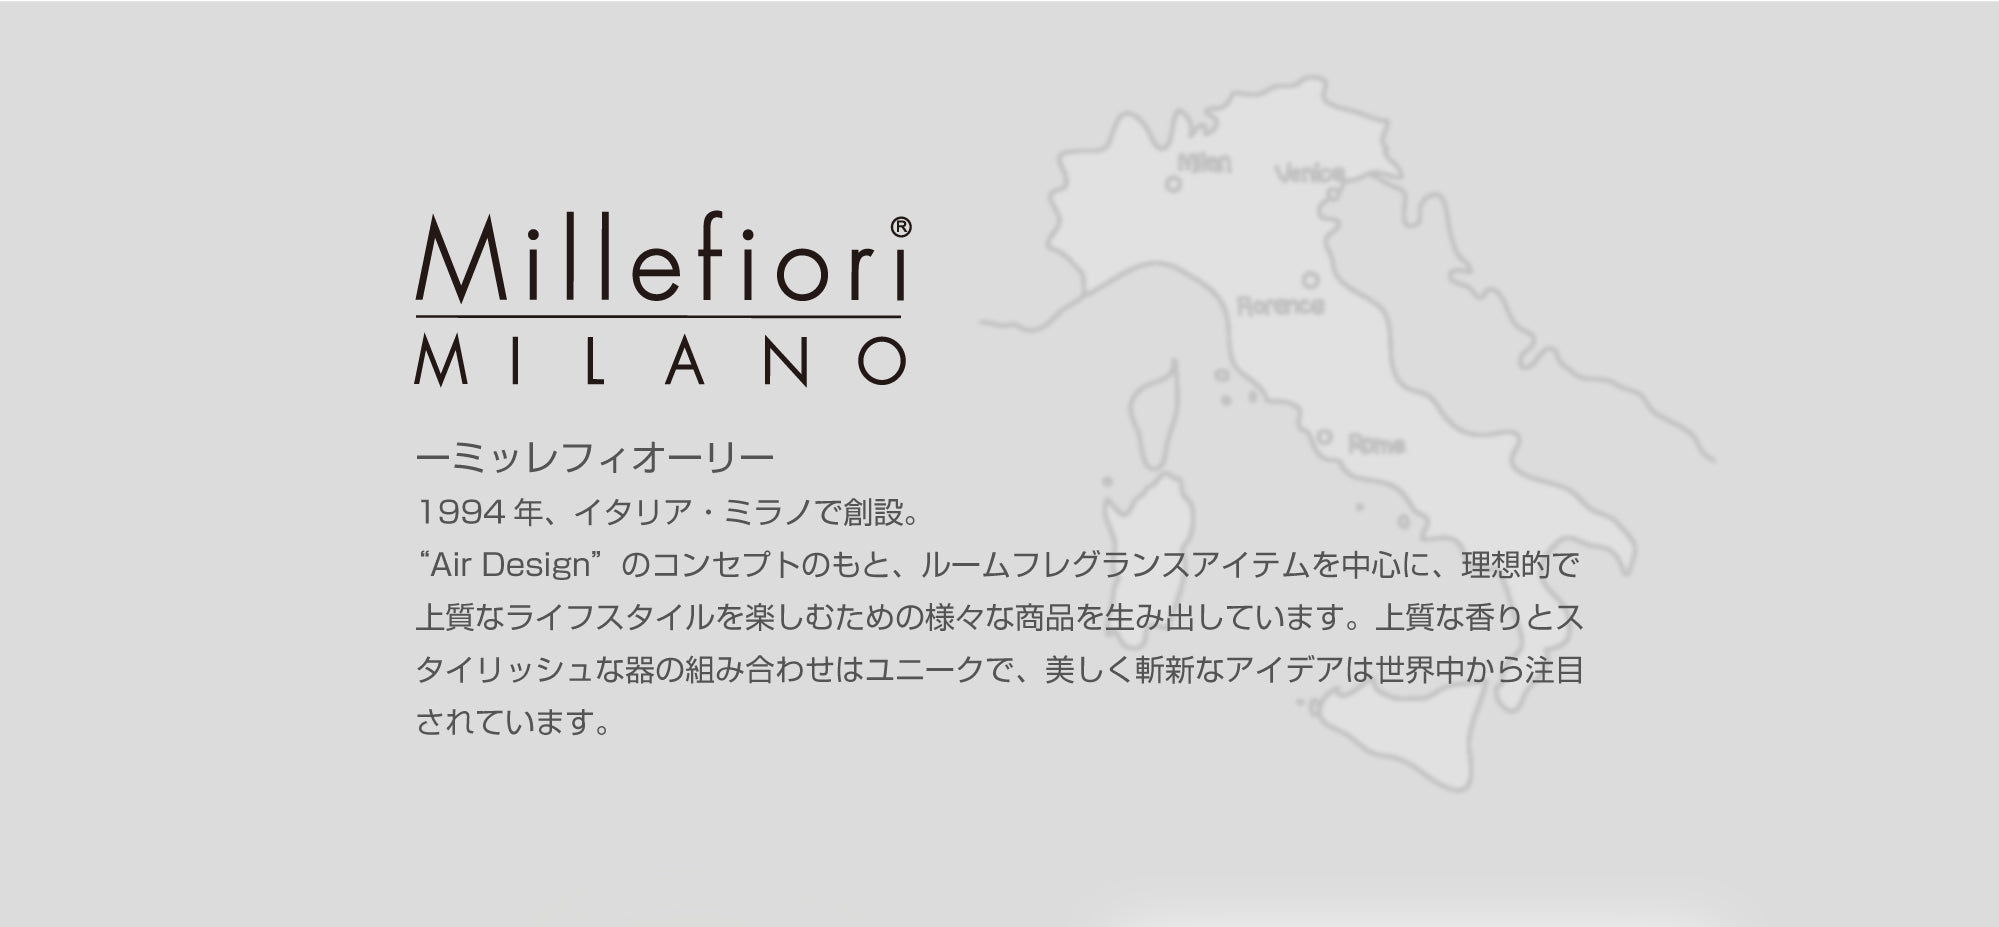 1994年、イタリア・ミラノで創設